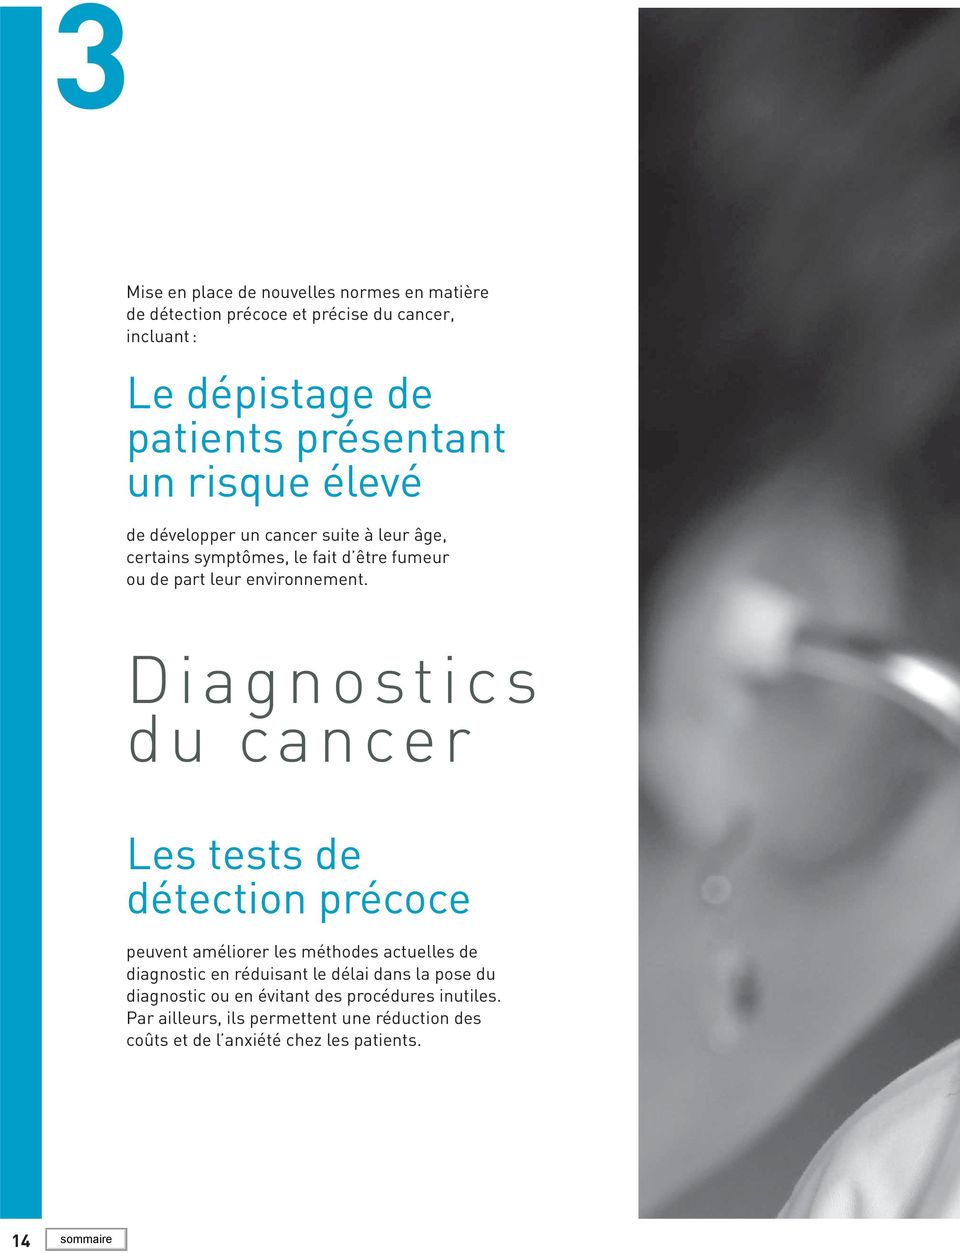 Diagnostics du cancer Les tests de détection précoce peuvent améliorer les méthodes actuelles de diagnostic en réduisant le délai dans la